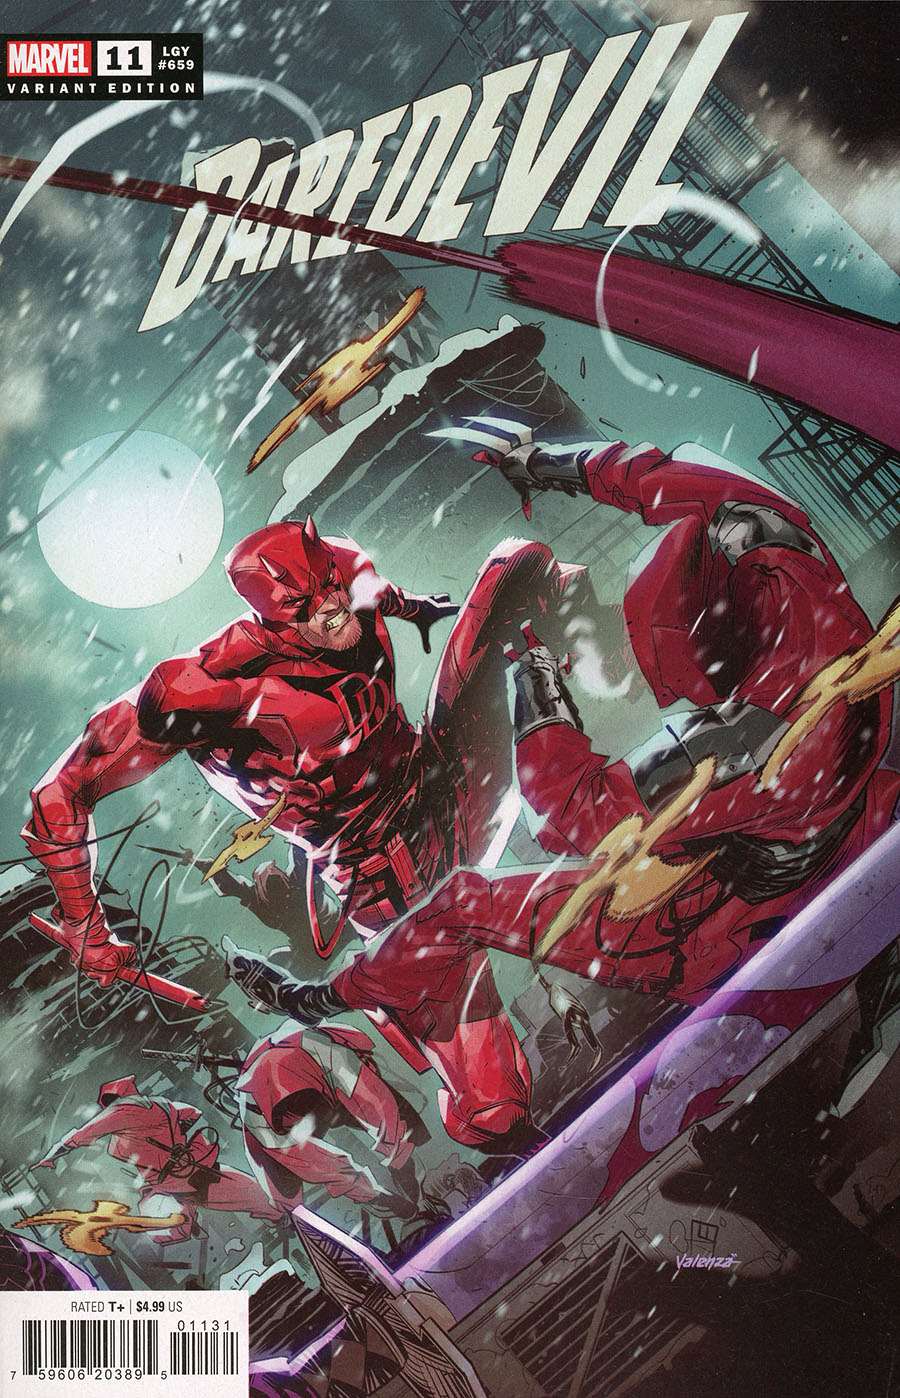 Daredevil (7th Series) #11B VF/NM ; Marvel | 659 Variant